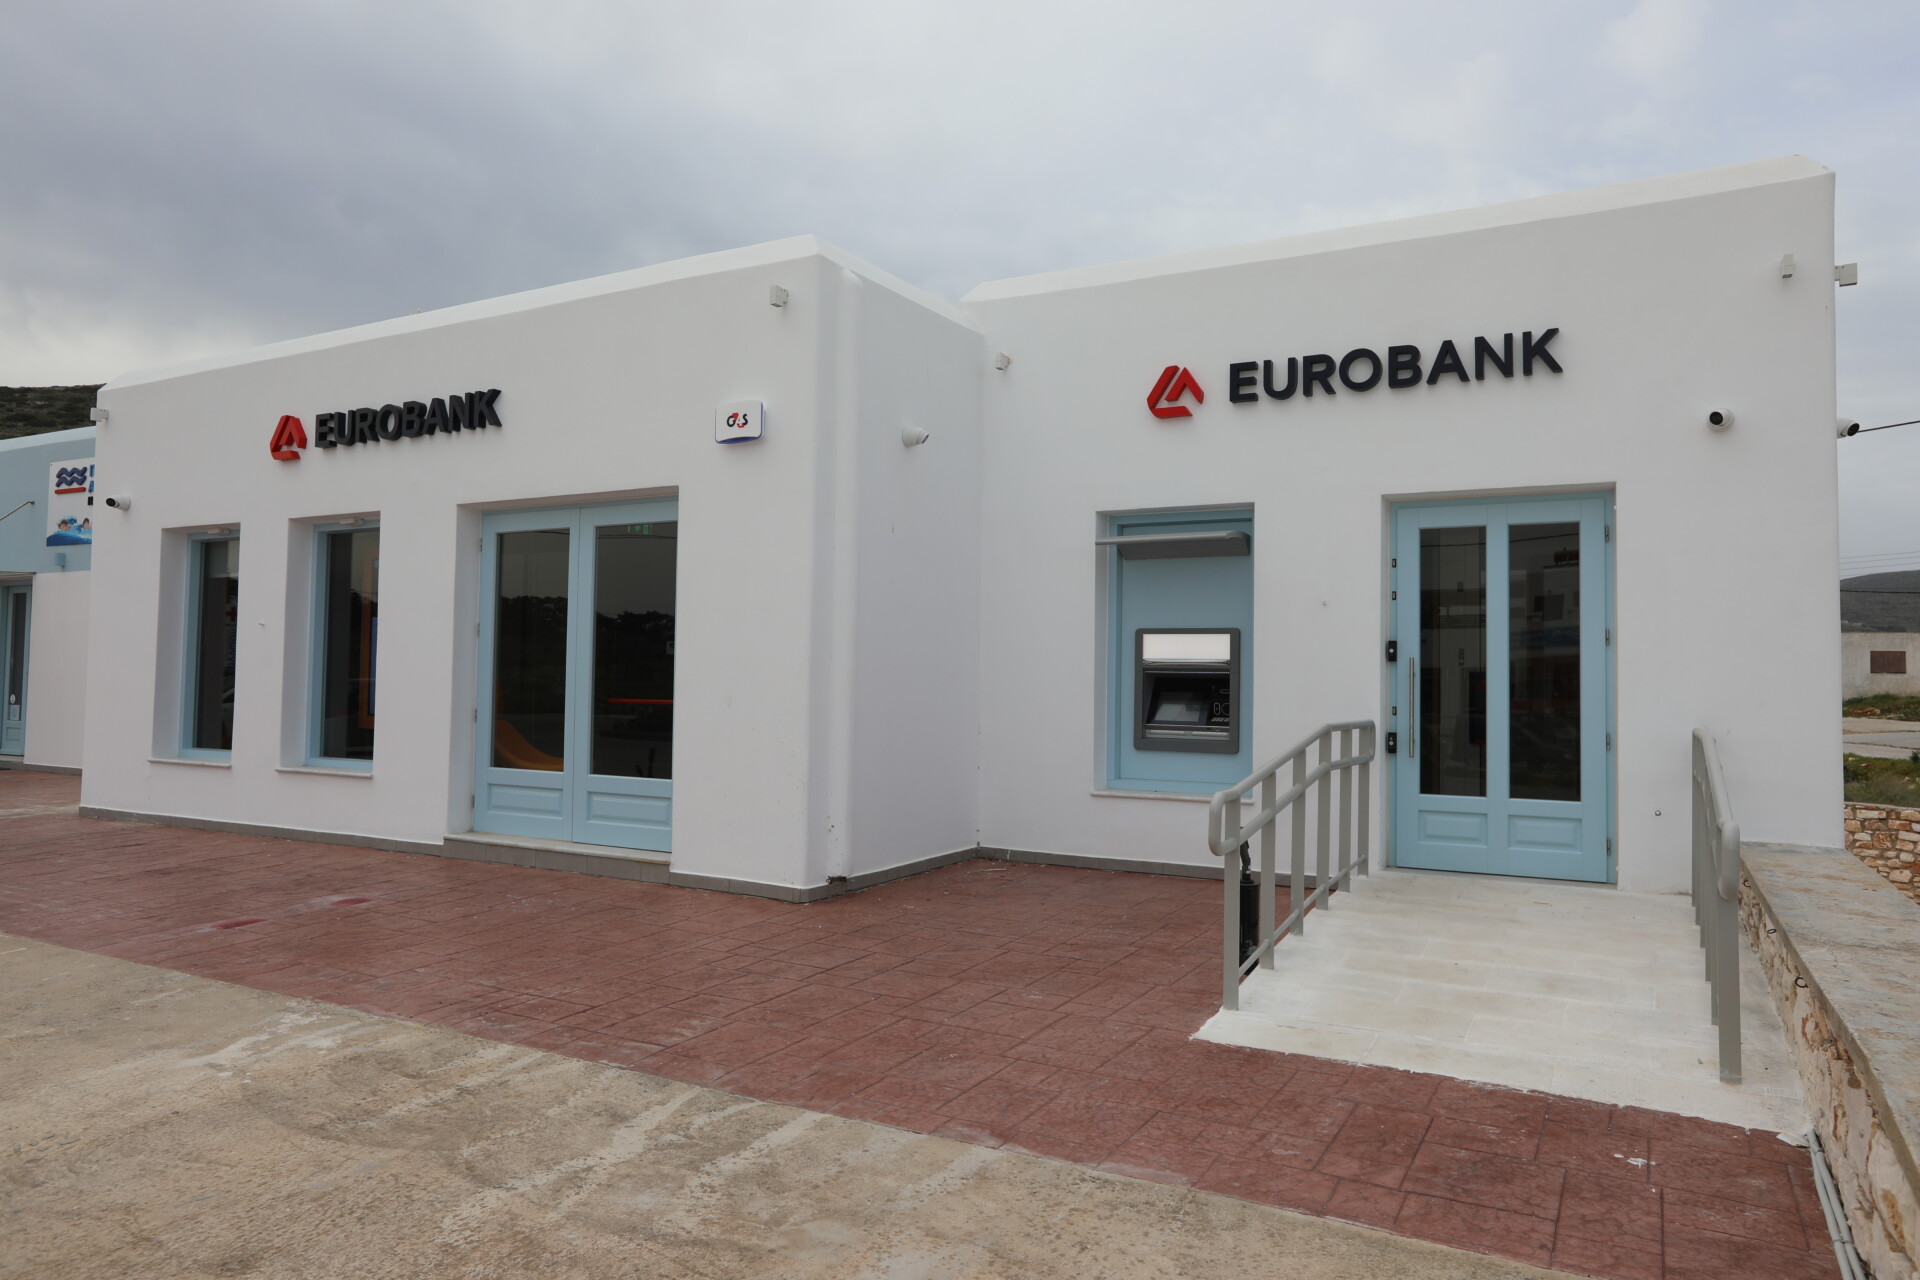 Το νέο κατάστημα νέας γενιάς της Eurobank στη Νάουσα της Πάρου © Eurobank